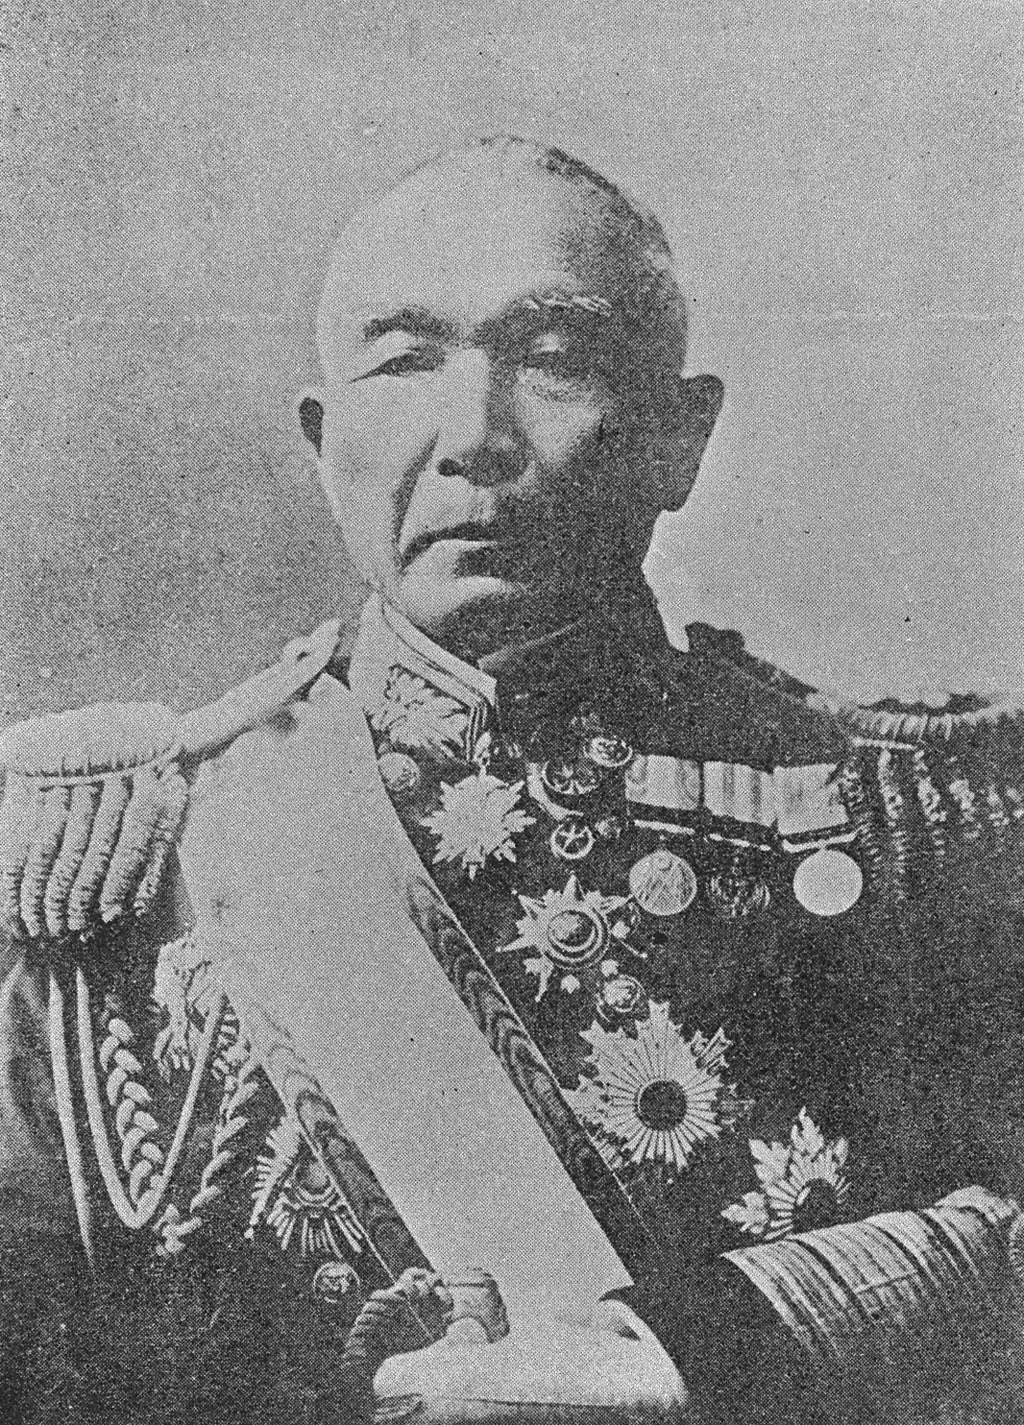 Portrait of SAMEJIMA Kazunori1